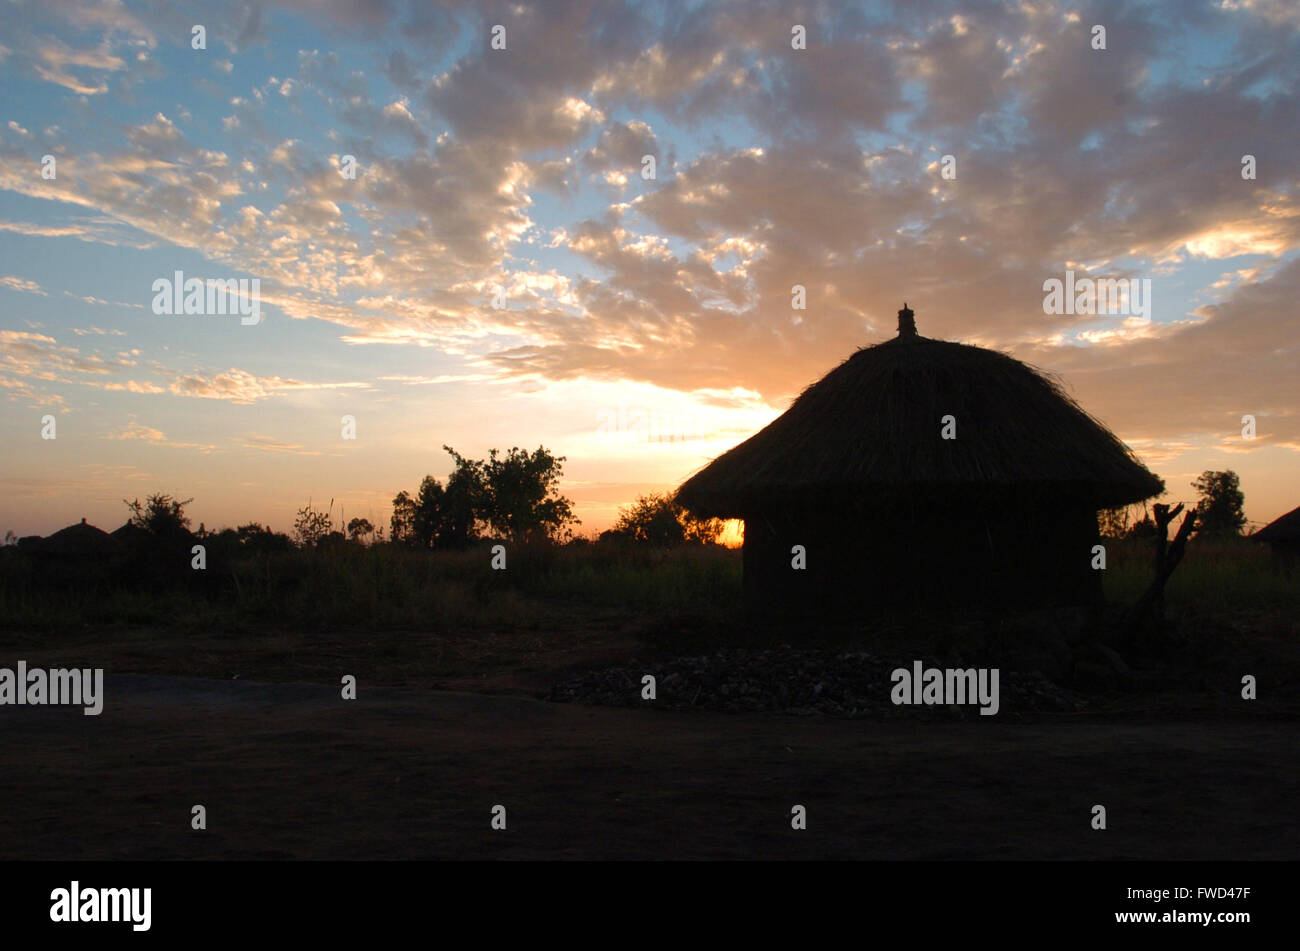 Lacekocot, district de Pader, en Ouganda. L'année 2009. Le soleil rouge se couche sur le paysage des huttes de boue et de palmiers à l'Lacekocot du Camp de personnes déplacées dans la région de Pader, au nord de l'Ouganda. Banque D'Images